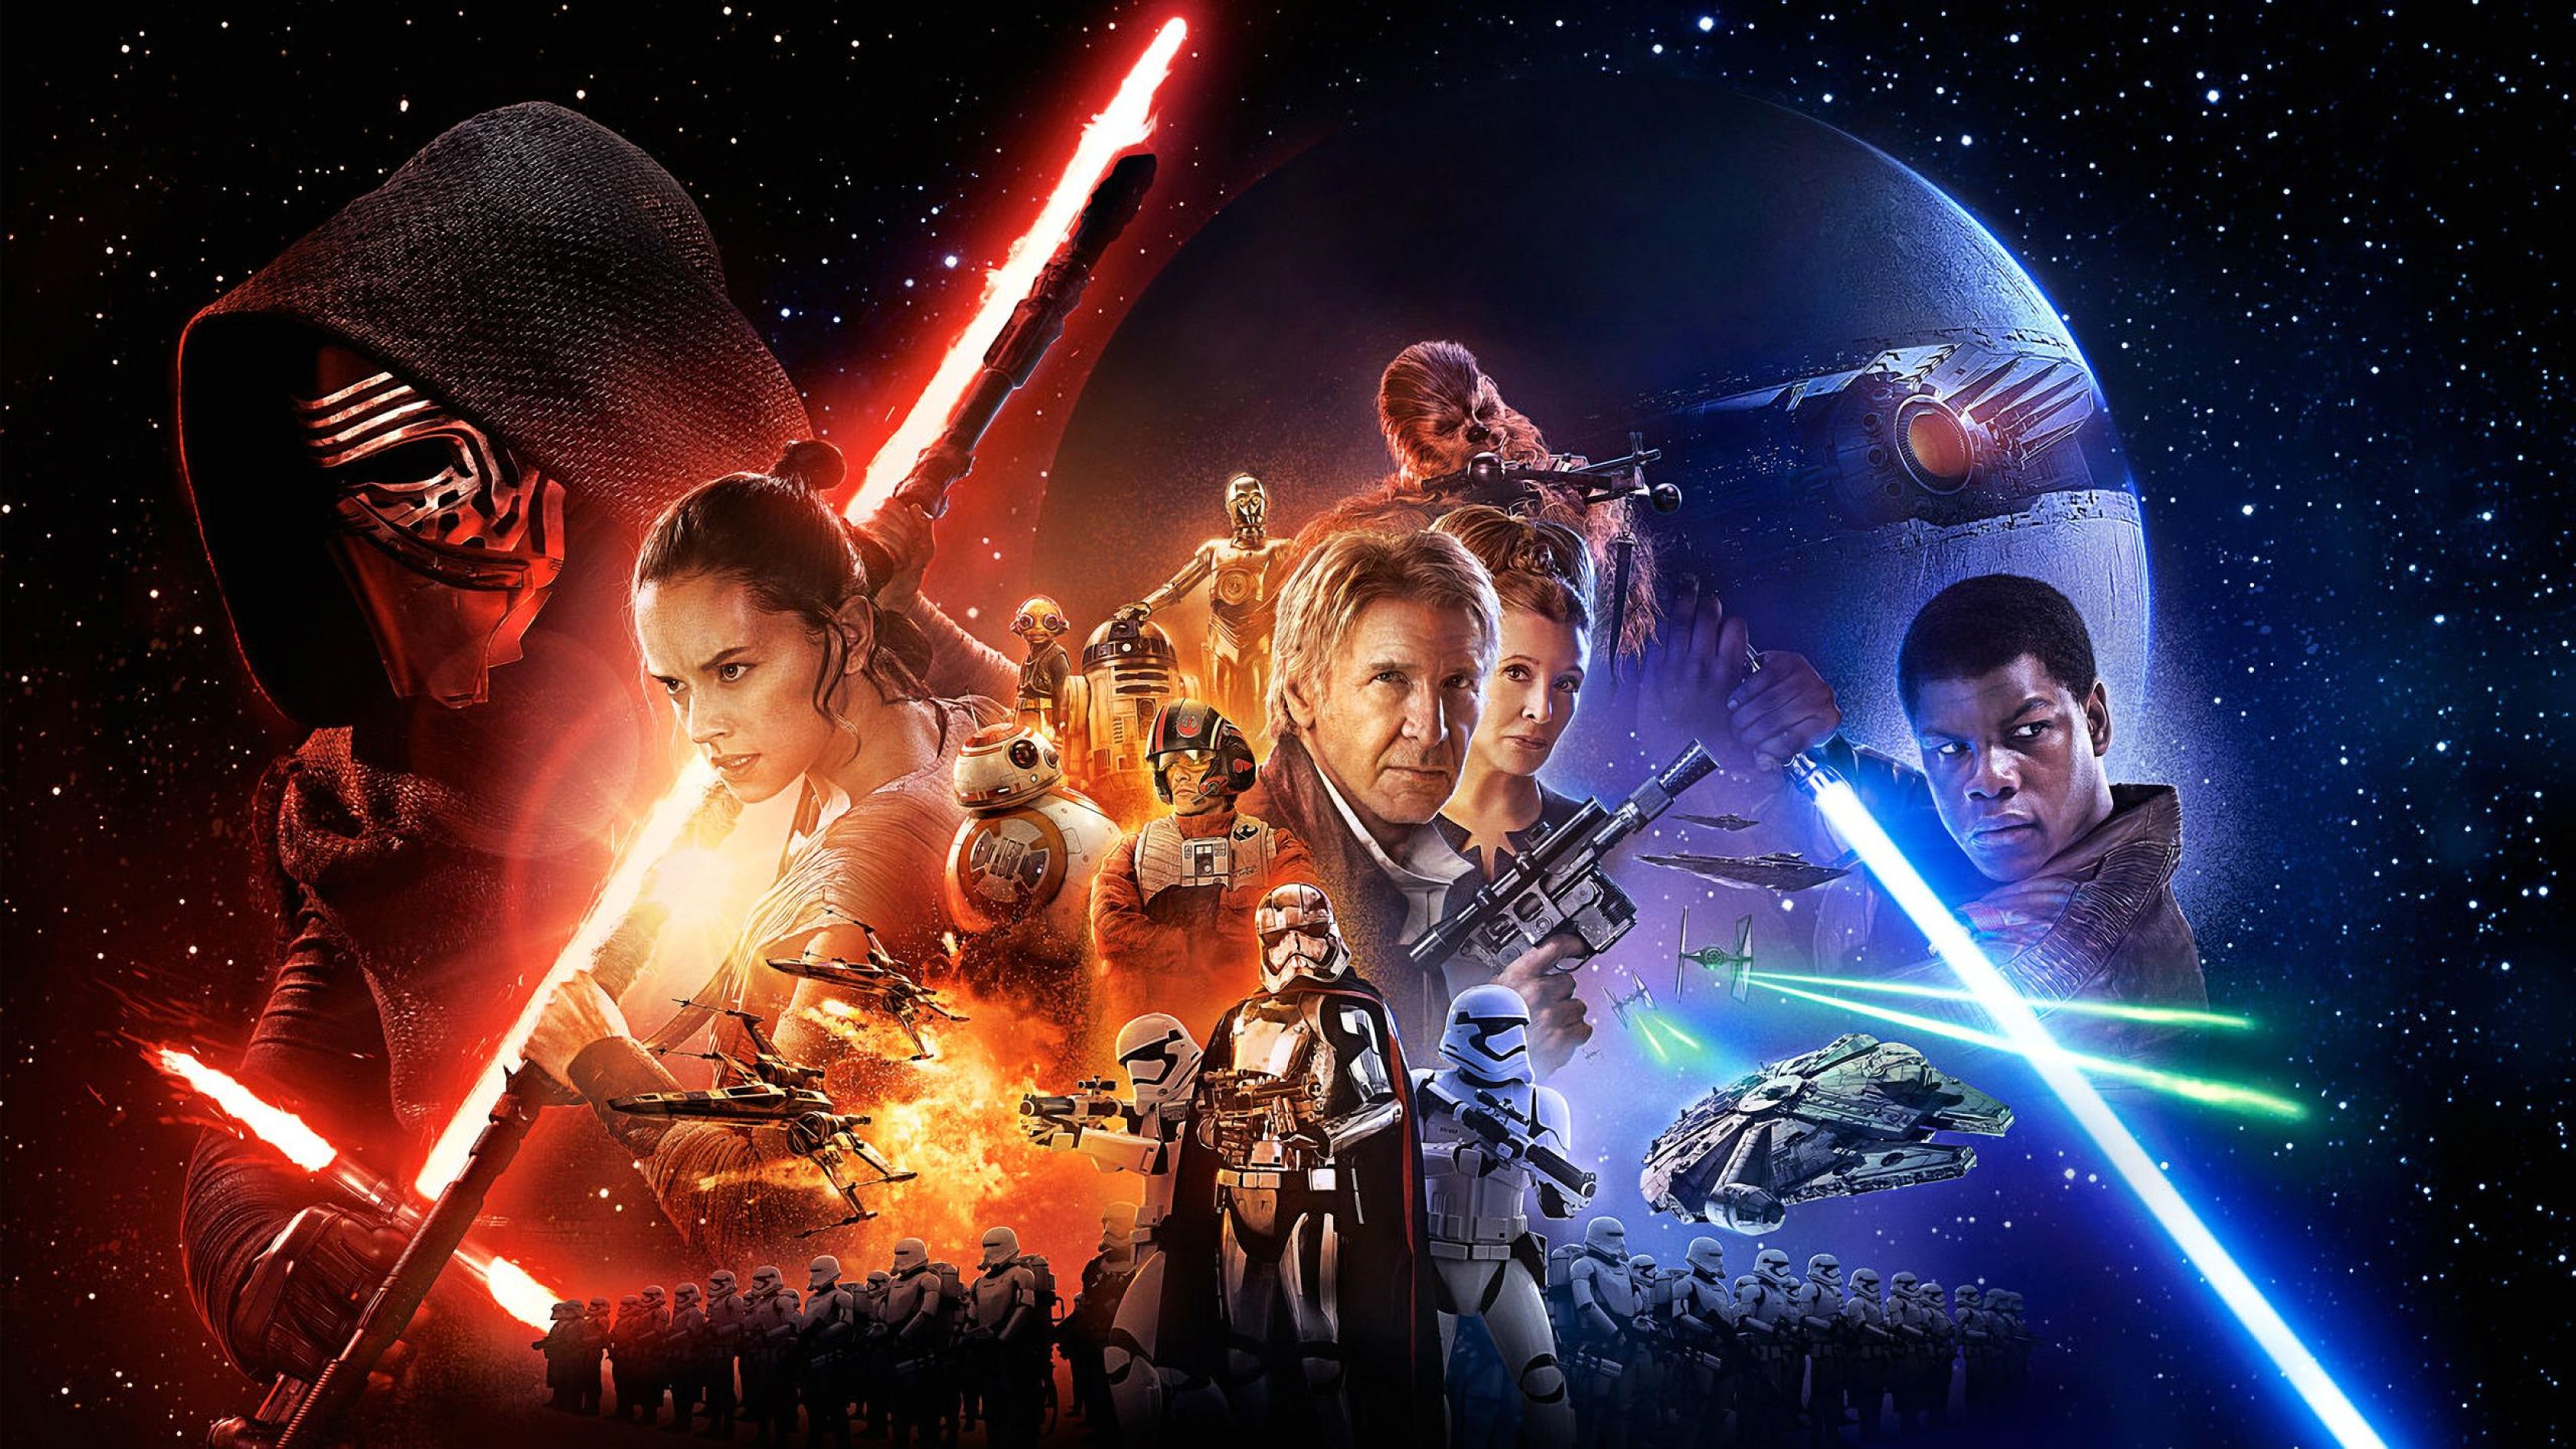 star, Wars, Force, Awakens, Sci fi, Futuristic, Disney, 1star wars force awakens, Action, Adventure Wallpaper